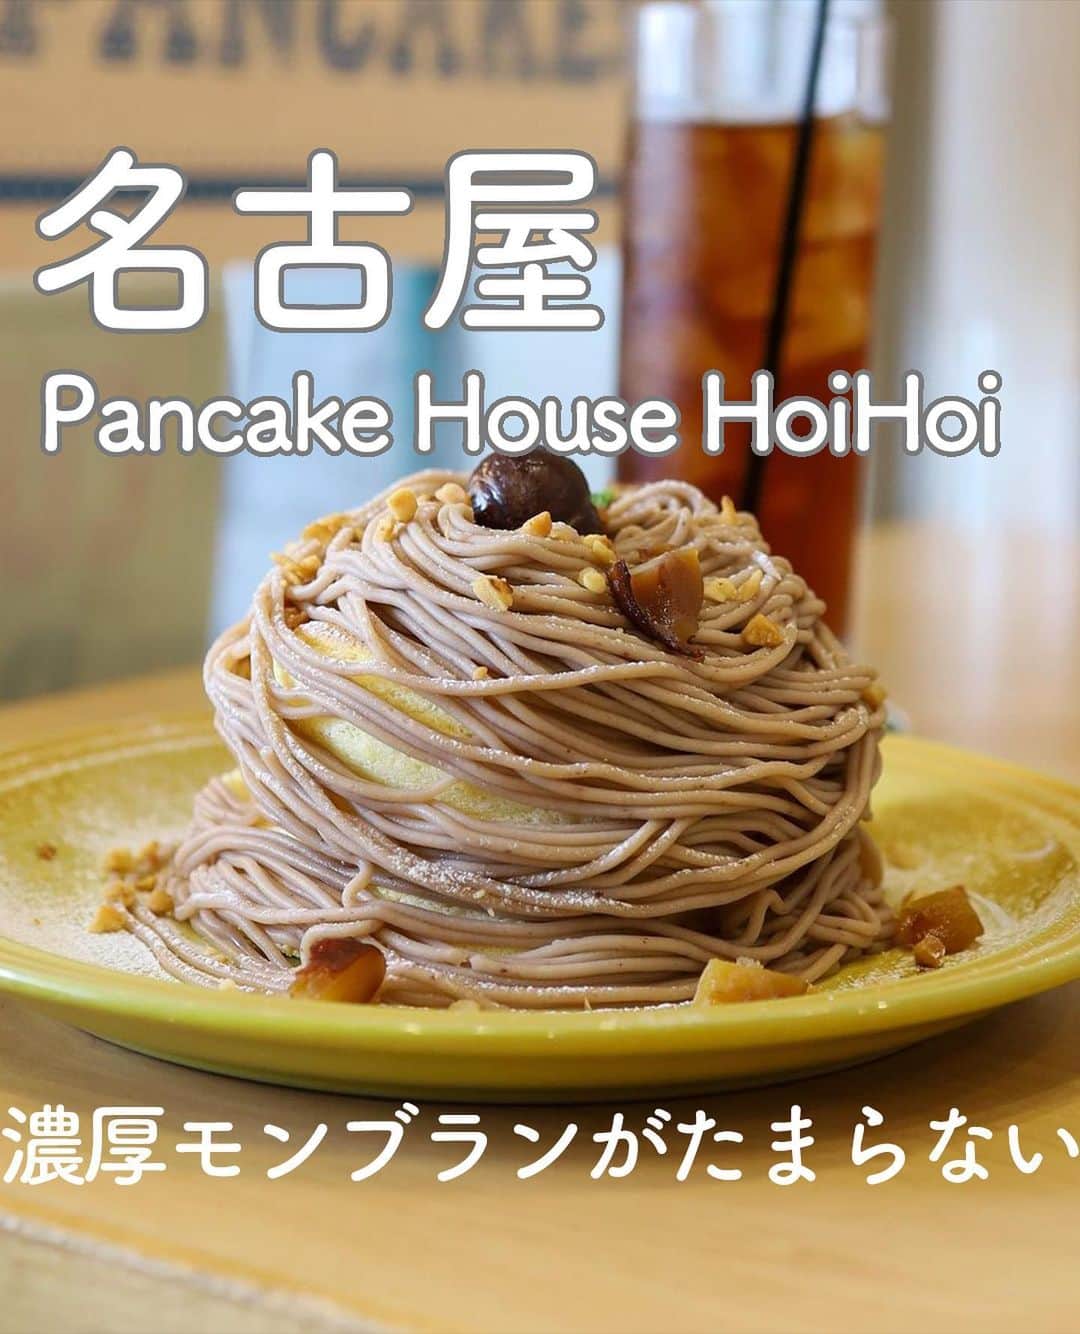 RETRIP<リトリップ>グルメのインスタグラム：「【RETRIP×名古屋🥞】 こちらは、愛知・名古屋にある「Pancake House HoiHoi（パンケーキハウス ホイホイ）」です。ふわふわのハワイアンスフレパンケーキを展開するこちらのカフェでは、季節ごとに旬の食材を使ったメニューが楽しめます。9月の限定メニューは「モンブランスフレパンケーキ（￥1380）」🌰！軽い食べ応えのパンケーキに、濃厚すぎるモンブランクリームがたっぷり。栗やナッツが散りばめられているので、食感も楽しみながらぺろりと頂ける一品です✨  [スポット情報] 📍住所：愛知県名古屋市中区栄5-4-2 レジデンシア栄南1A 🚃最寄り駅：矢場町駅から徒歩5分 🕐営業時間：11:00～19:00 🗓定休日：月曜 📝予約：可  ※投稿時の情報となります  ・  Photo by @mari_pip1025.pancake  ______________________________  全国で話題のスイーツを紹介しているアカウントです！ 他の投稿はこちらから！ >> @retrip_gourmet  ______________________________  RETRIPでは「おでかけ」に関する様々な情報を発信しています。ぜひ他のアカウントもチェックしてくださいね！ . @retrip_news 最新のおでかけ情報を紹介 @retrip_nippon 日本の絶景を紹介 @retrip_global 海外の絶景を紹介 @retrip_gourmet 全国の話題のスイーツを紹介 @retrip_cafe 全国のおしゃれなカフェを紹介 . ▼RETRIP[リトリップ]のアプリ 最新情報をまとめてご覧になりたい方には『RETRIPアプリ』がおすすめ！明日のお出かけにすぐ活かせるアイディアが盛りだくさんです✨プロフィールのURLからダウンロードできますので、ぜひご利用ください。 .  ______________________________  #retrip #リトリップ #retrip_groumet #retrip_cafe #国内グルメ #東京グルメ #国内カフェ #東京カフェ #グルメ日記 #飯テロ #食べ歩き #groumetstagram #japanesefood #カフェ #スイーツ #カフェ巡り #かふぇすたぐらむ #スイーツ好きと繋がりたい #instafood  #愛知 #名古屋 #名古屋グルメ #名古屋カフェ #名古屋スイーツ #新作 #秋スイーツ  #栗 #モンブラン #パンケーキ #期間限定」